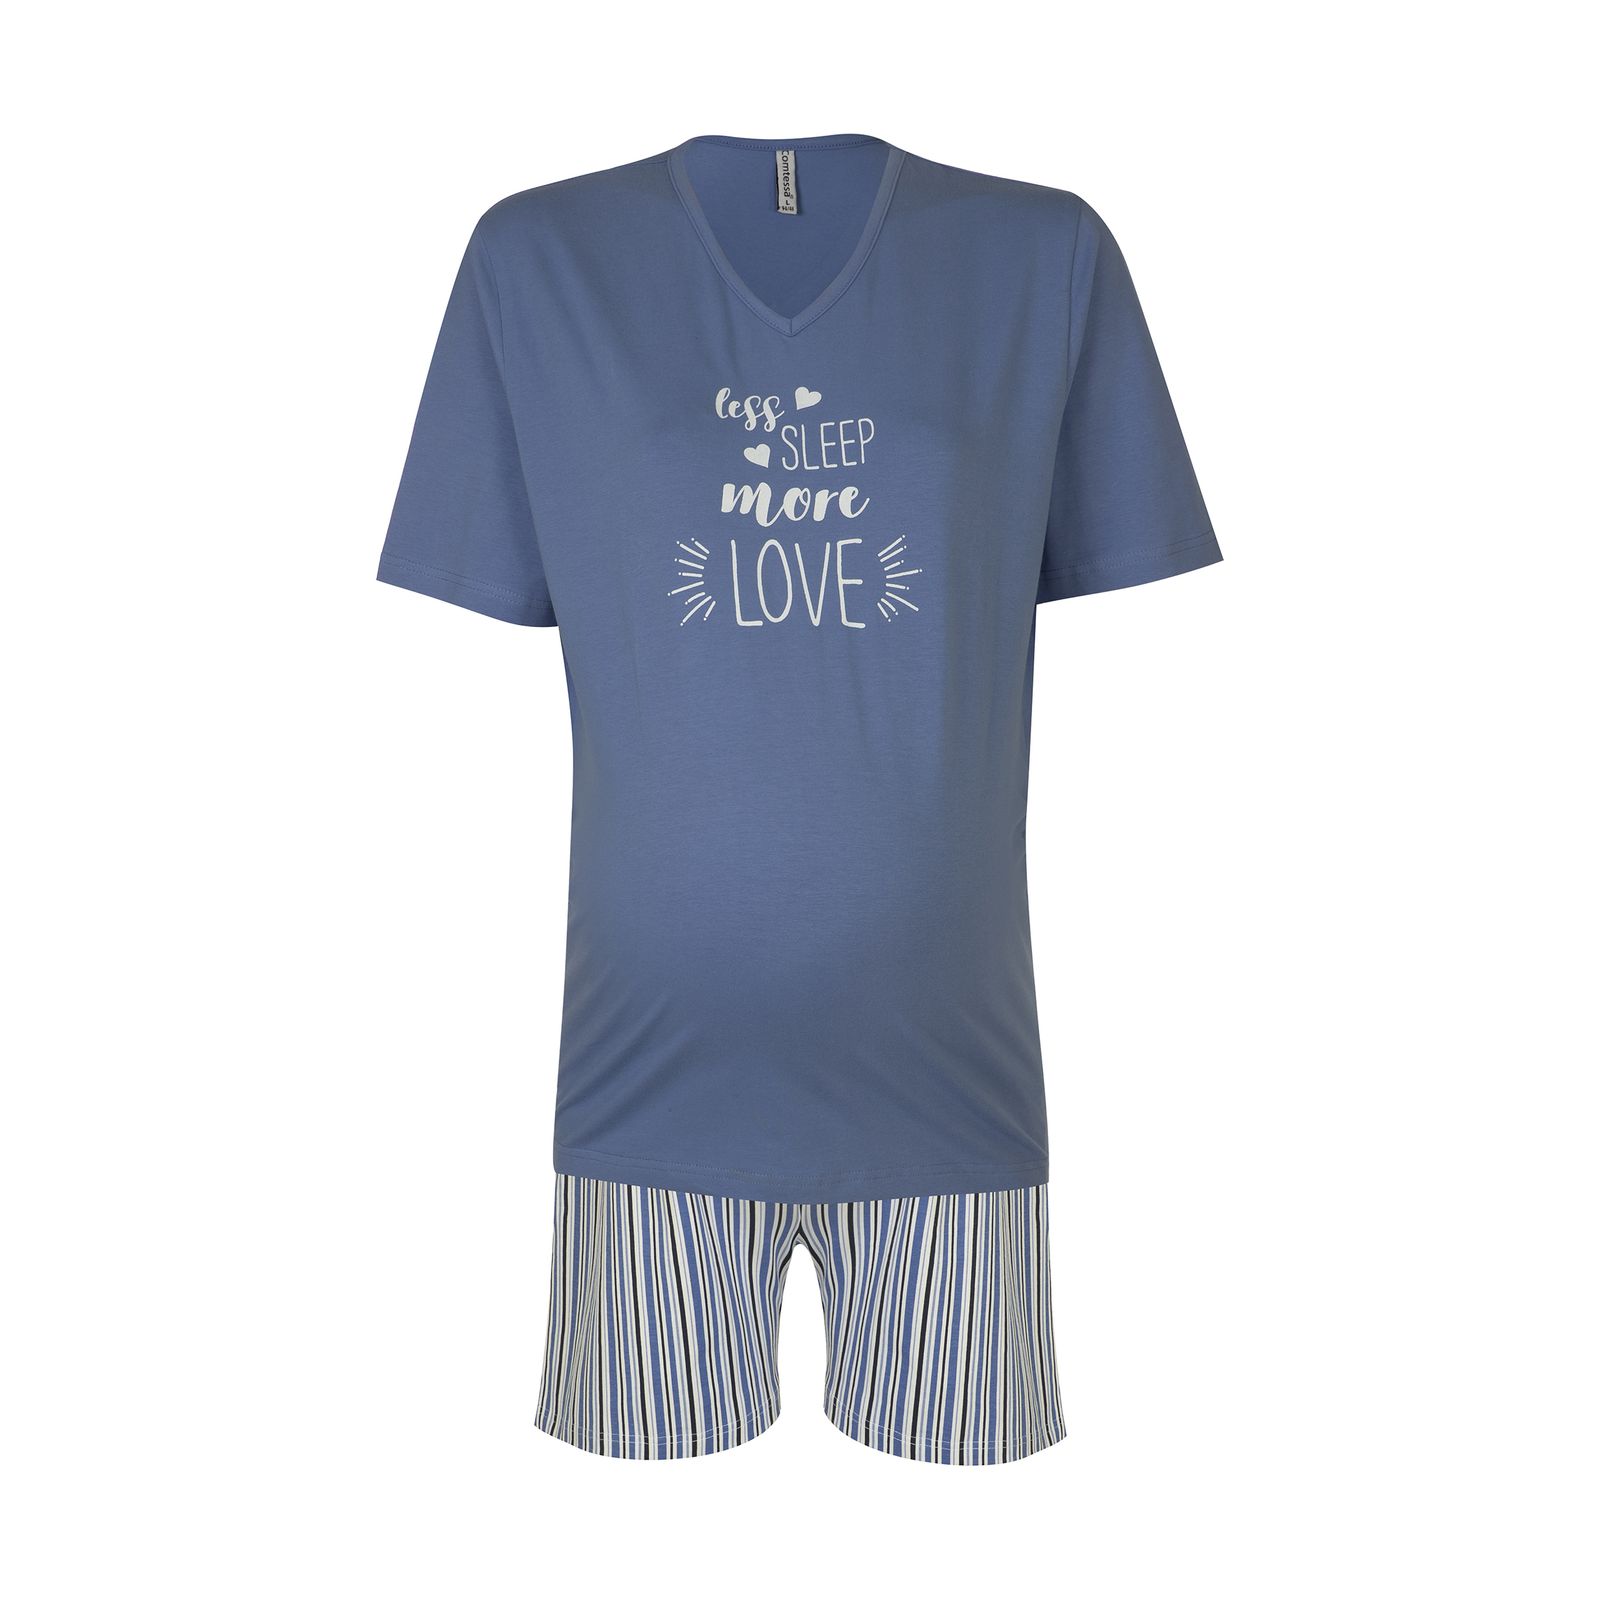 ست تی شرت و شلوارک بارداری اسمارا مدل 2020 -  - 1